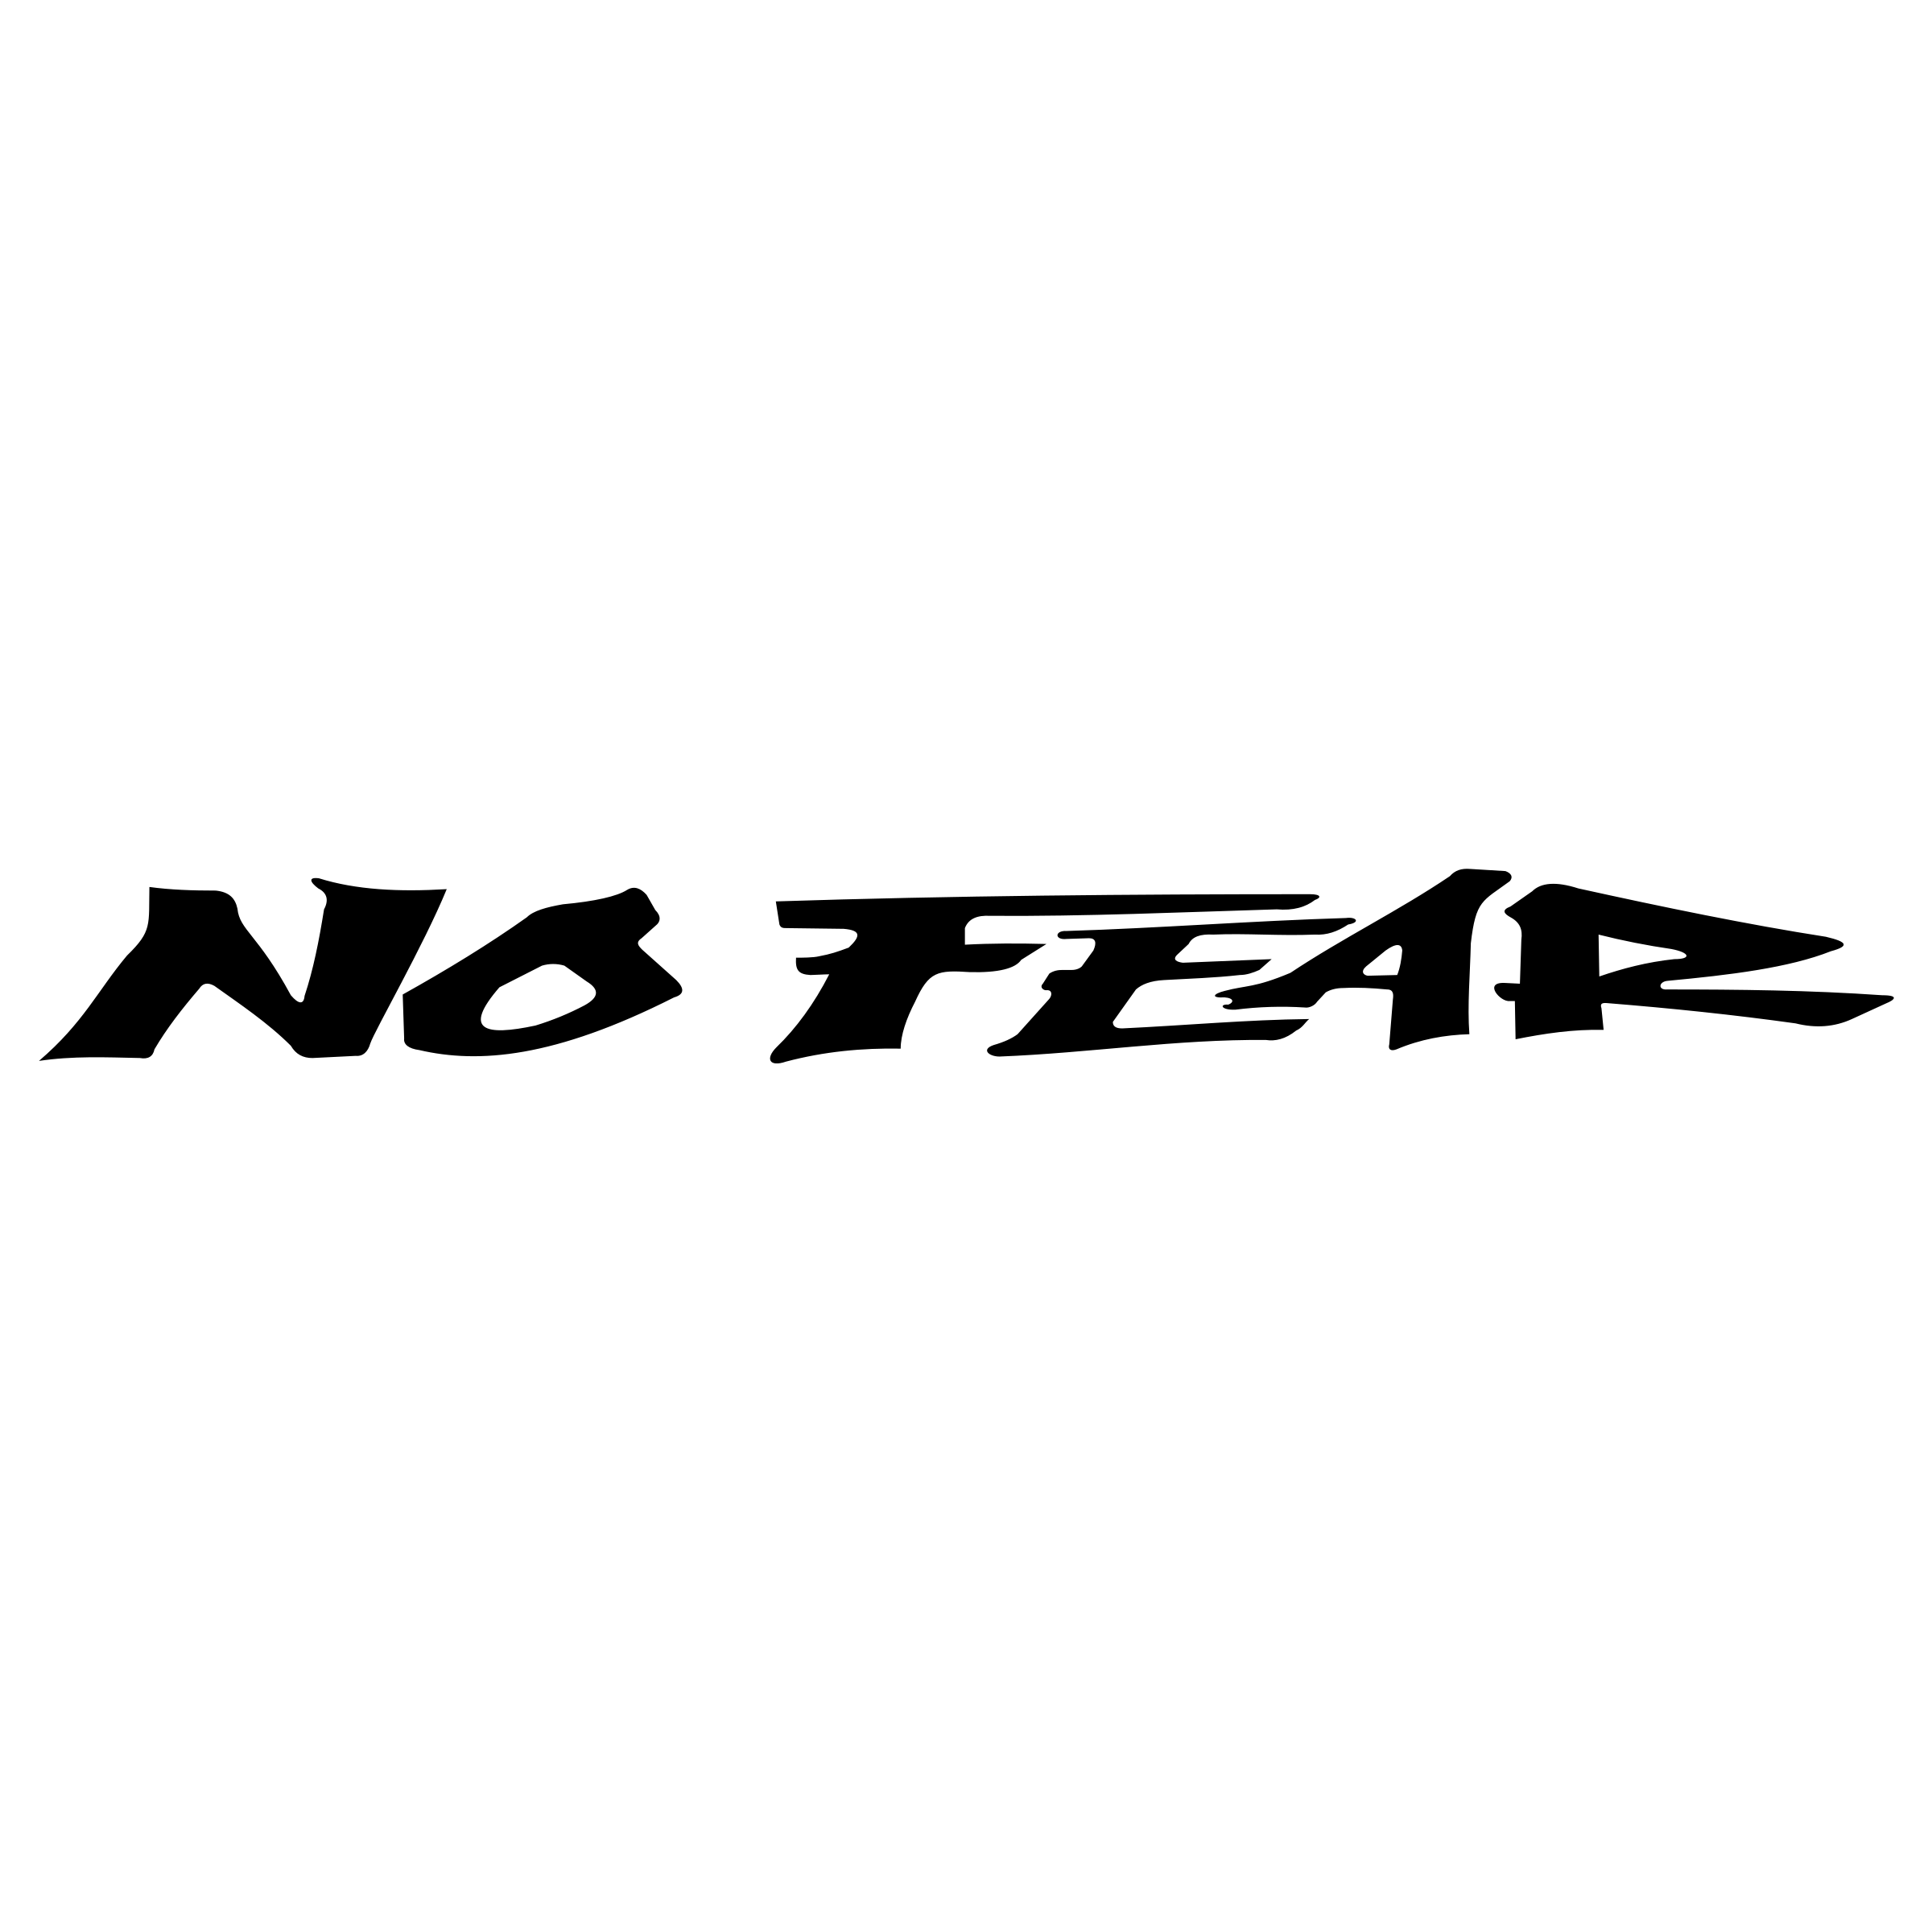 The No Fear Logo - No Fear Logo PNG Transparent & SVG Vector